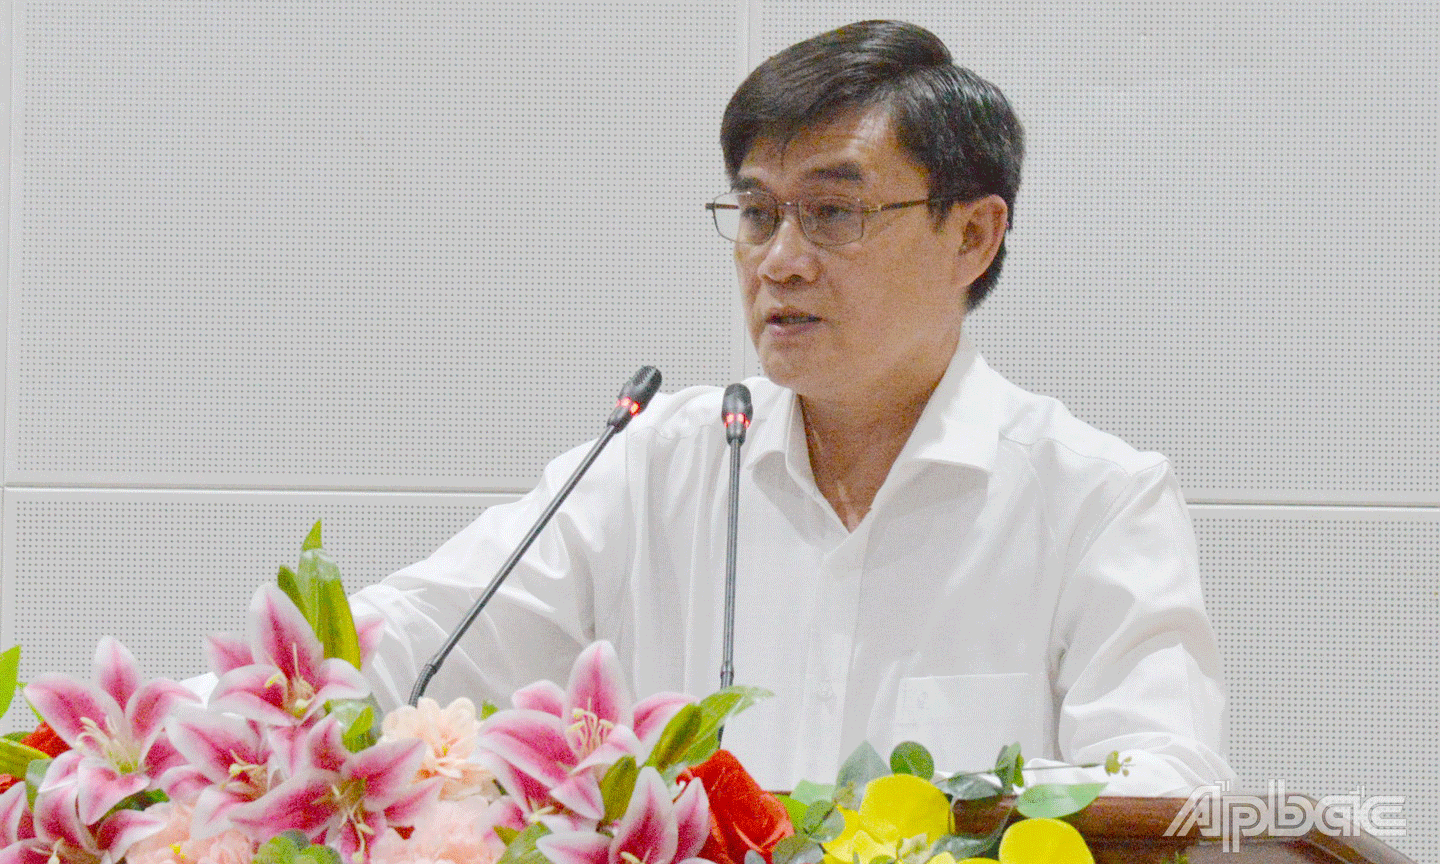 Đồng chí Nguyễn Văn Mười, Phó Chủ tịch UBND tỉnh nhấn mạnh nhiệm vụ của các cấp, ngành trong tỉnh là nỗ lực kiểm soát ngăn chặn đà lây lan nhanh chóng của dịch Covid-19.